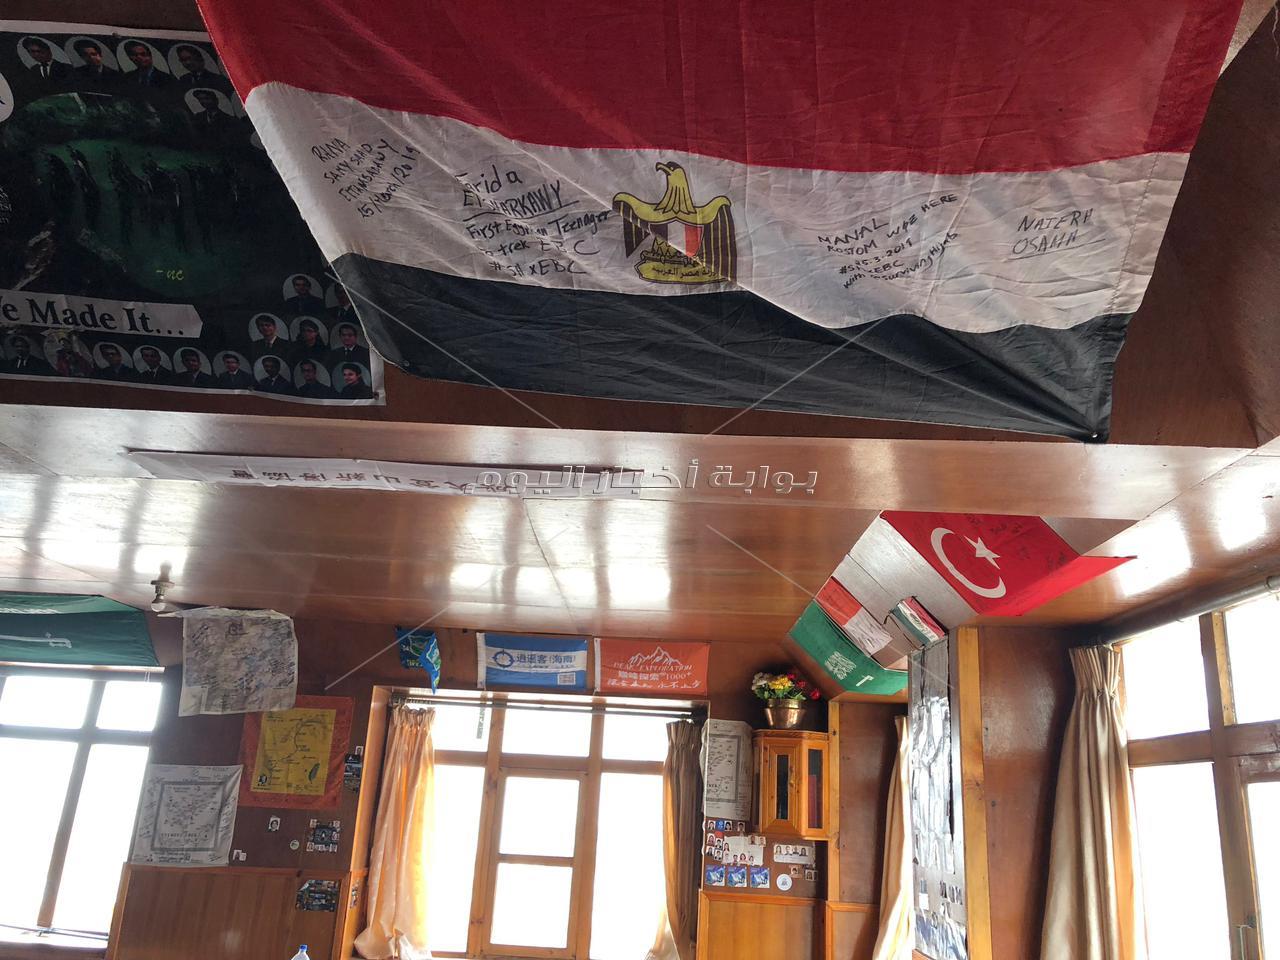  أصغر مصرية وعربية تتسلَّق أعلى قمة فى العالم لرفع علم مصر